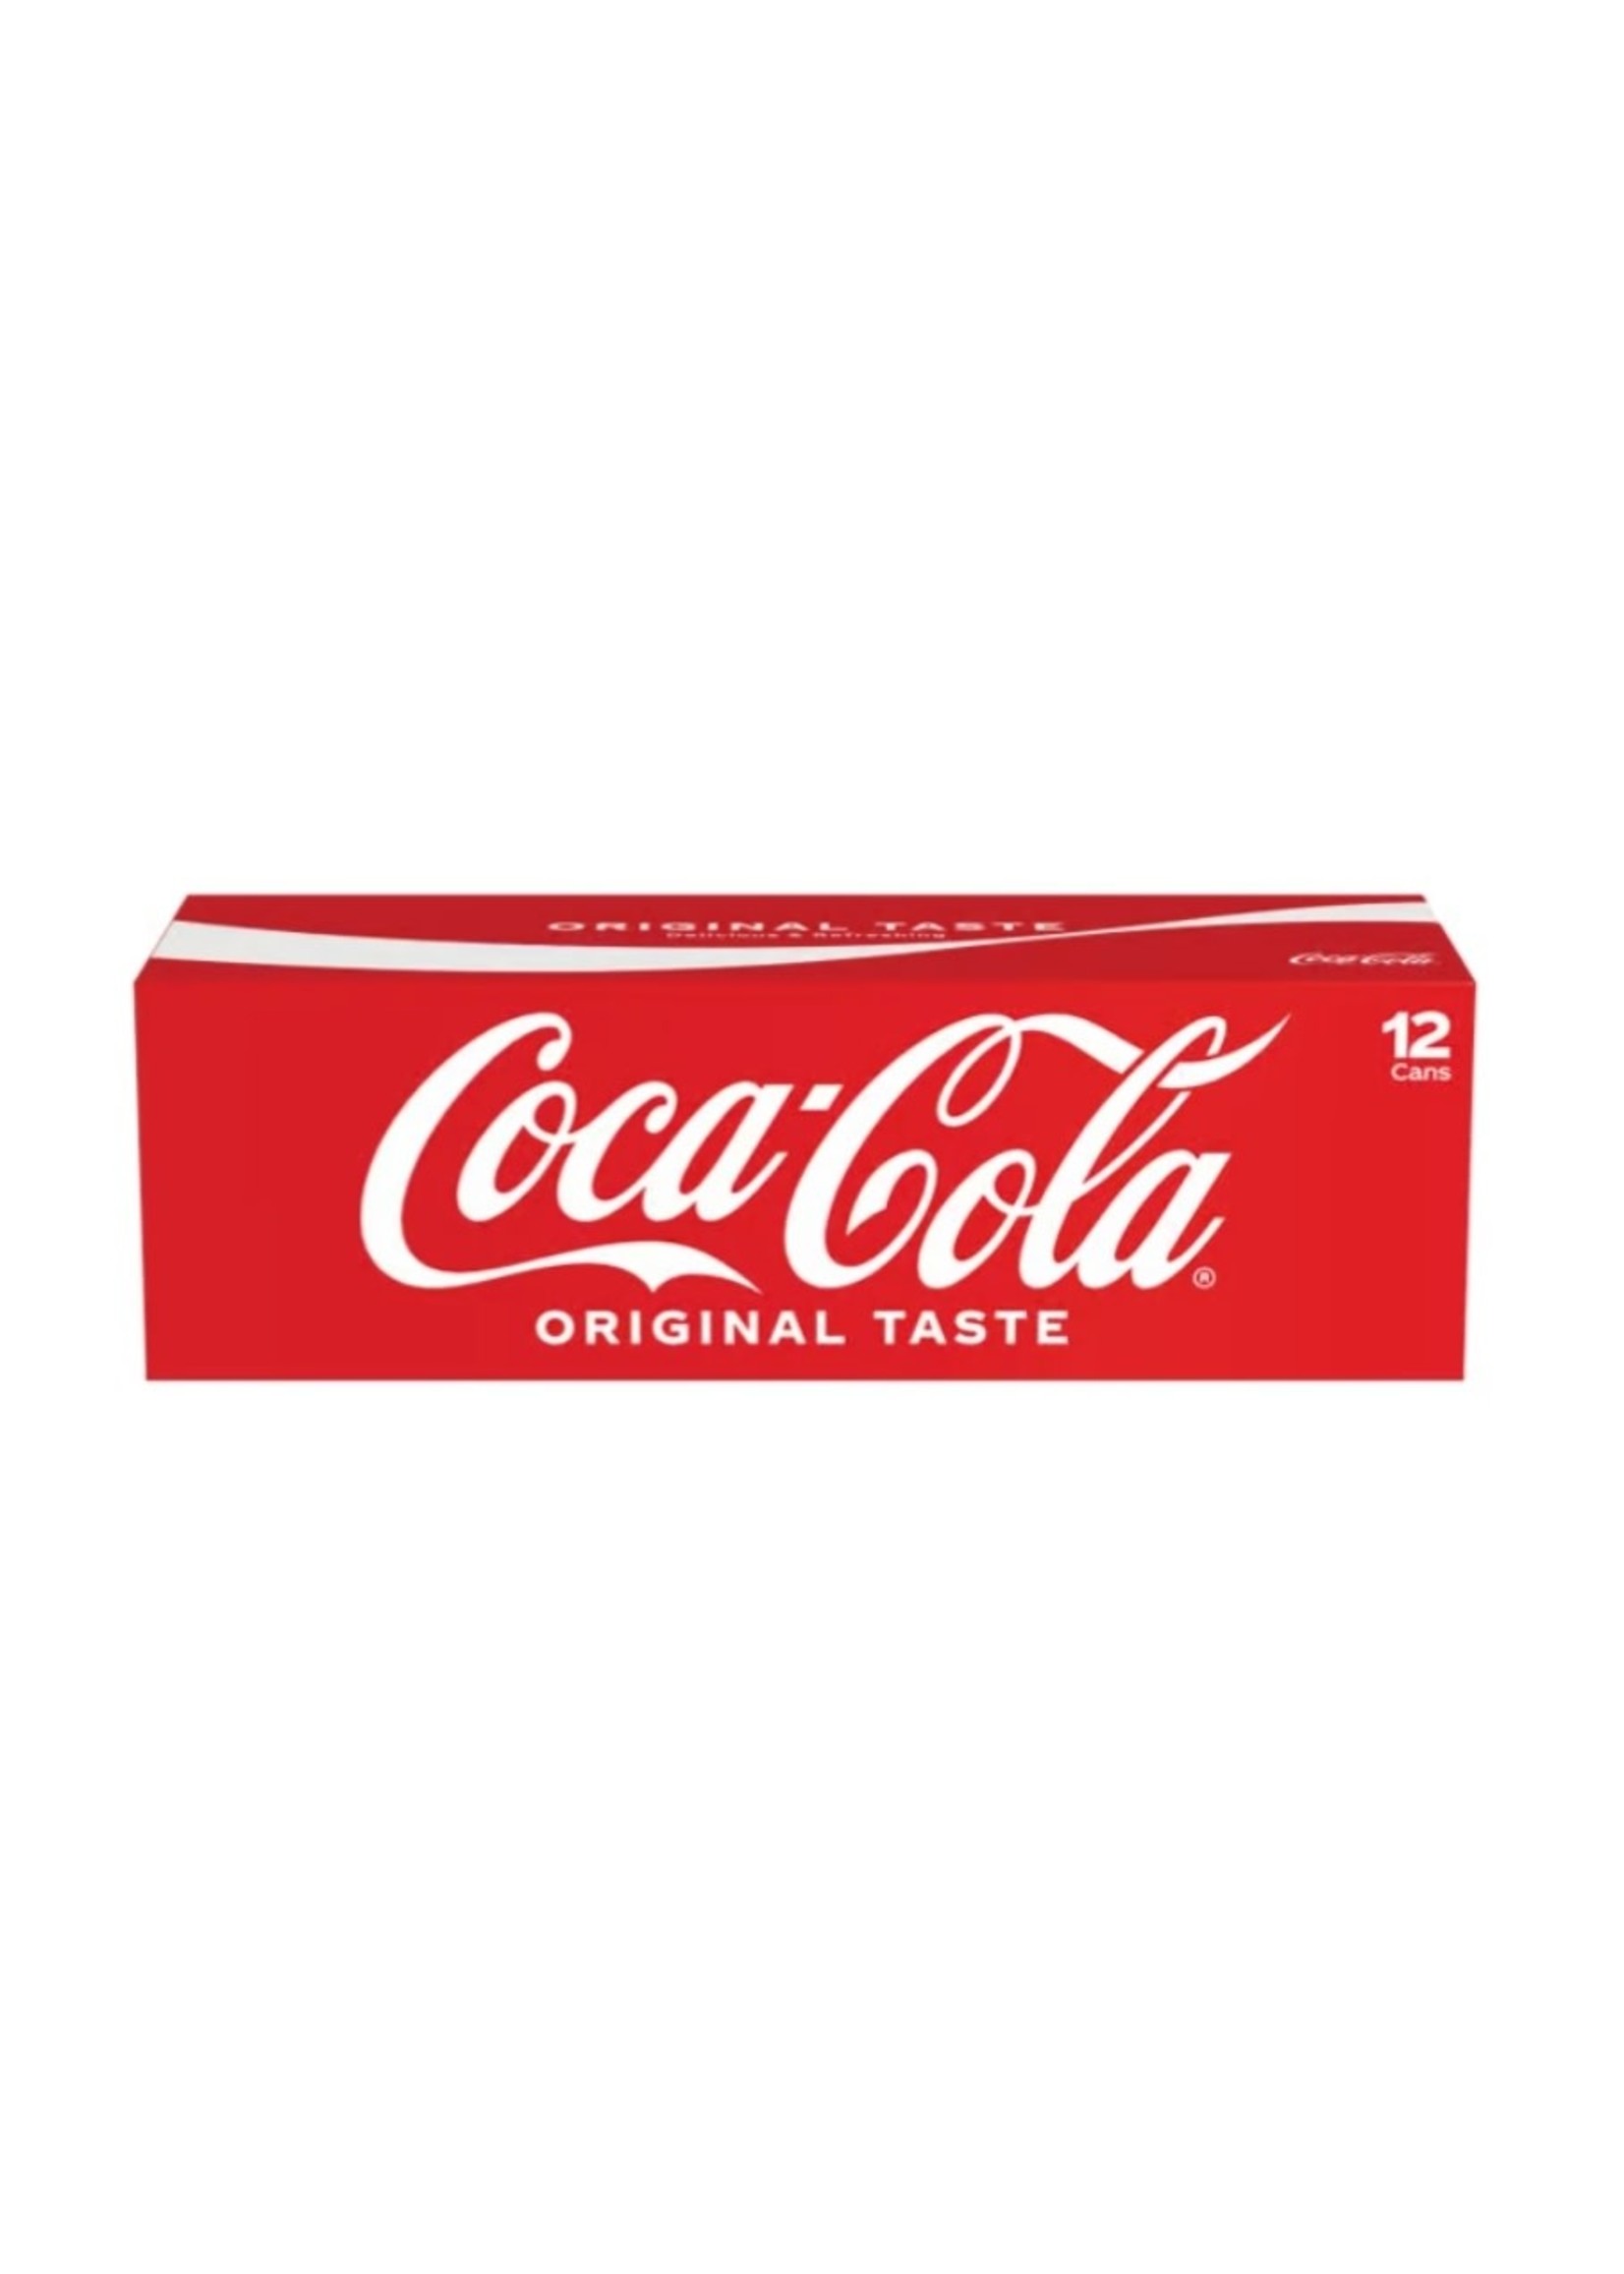 Coca-Cola 115583 - Coca-Cola Fridge Pack Cans, 12 fl oz, 12 Pack, 2 Sets